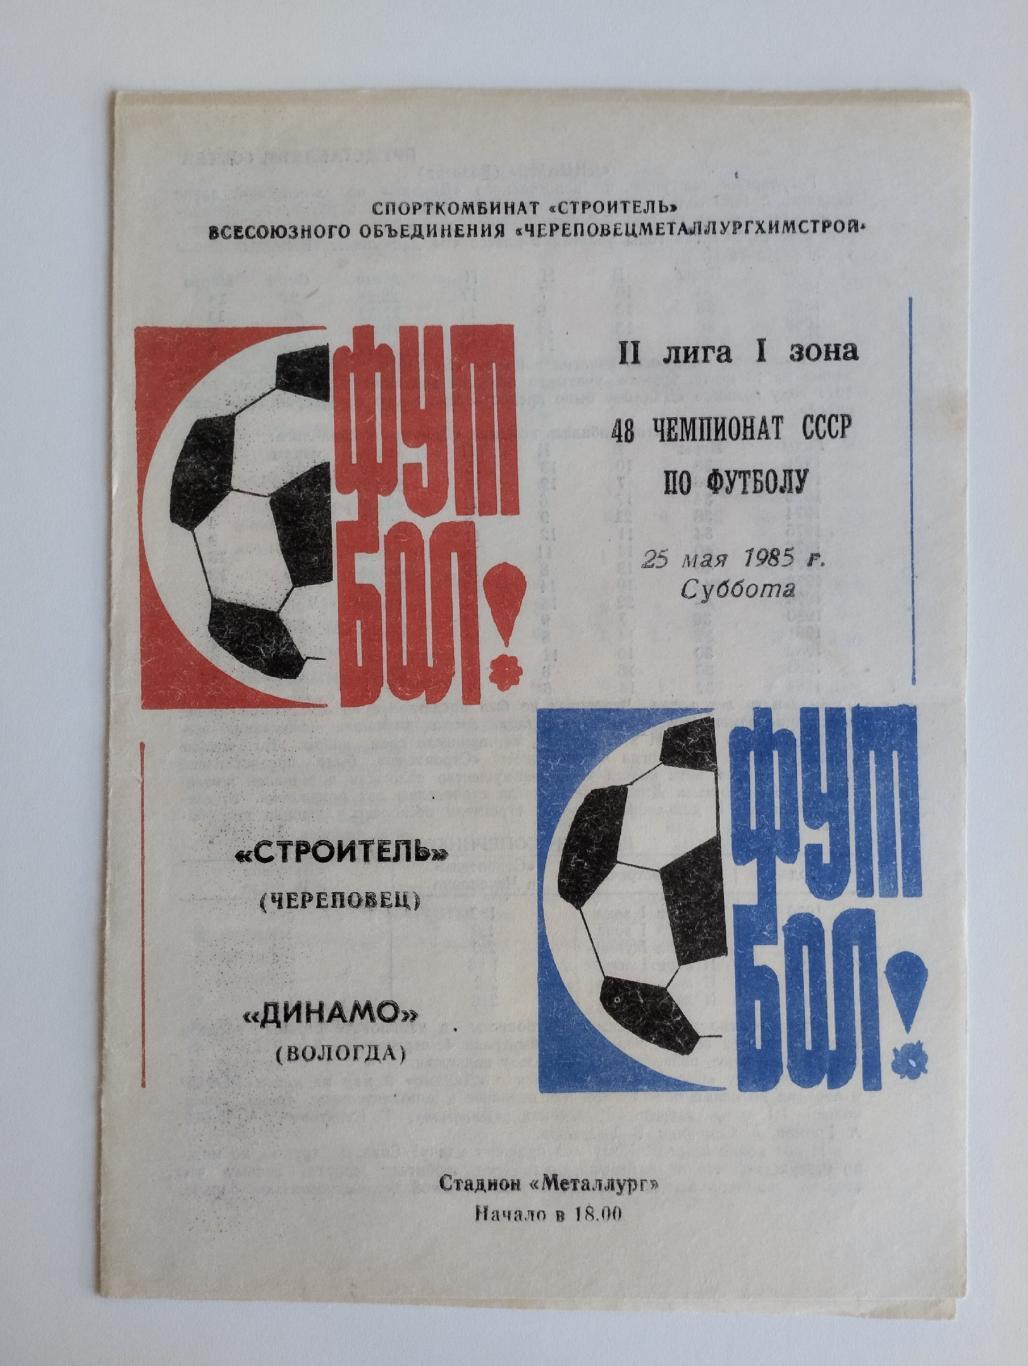 Строитель (Череповец) - Динамо (Вологда) - 25.05.1985